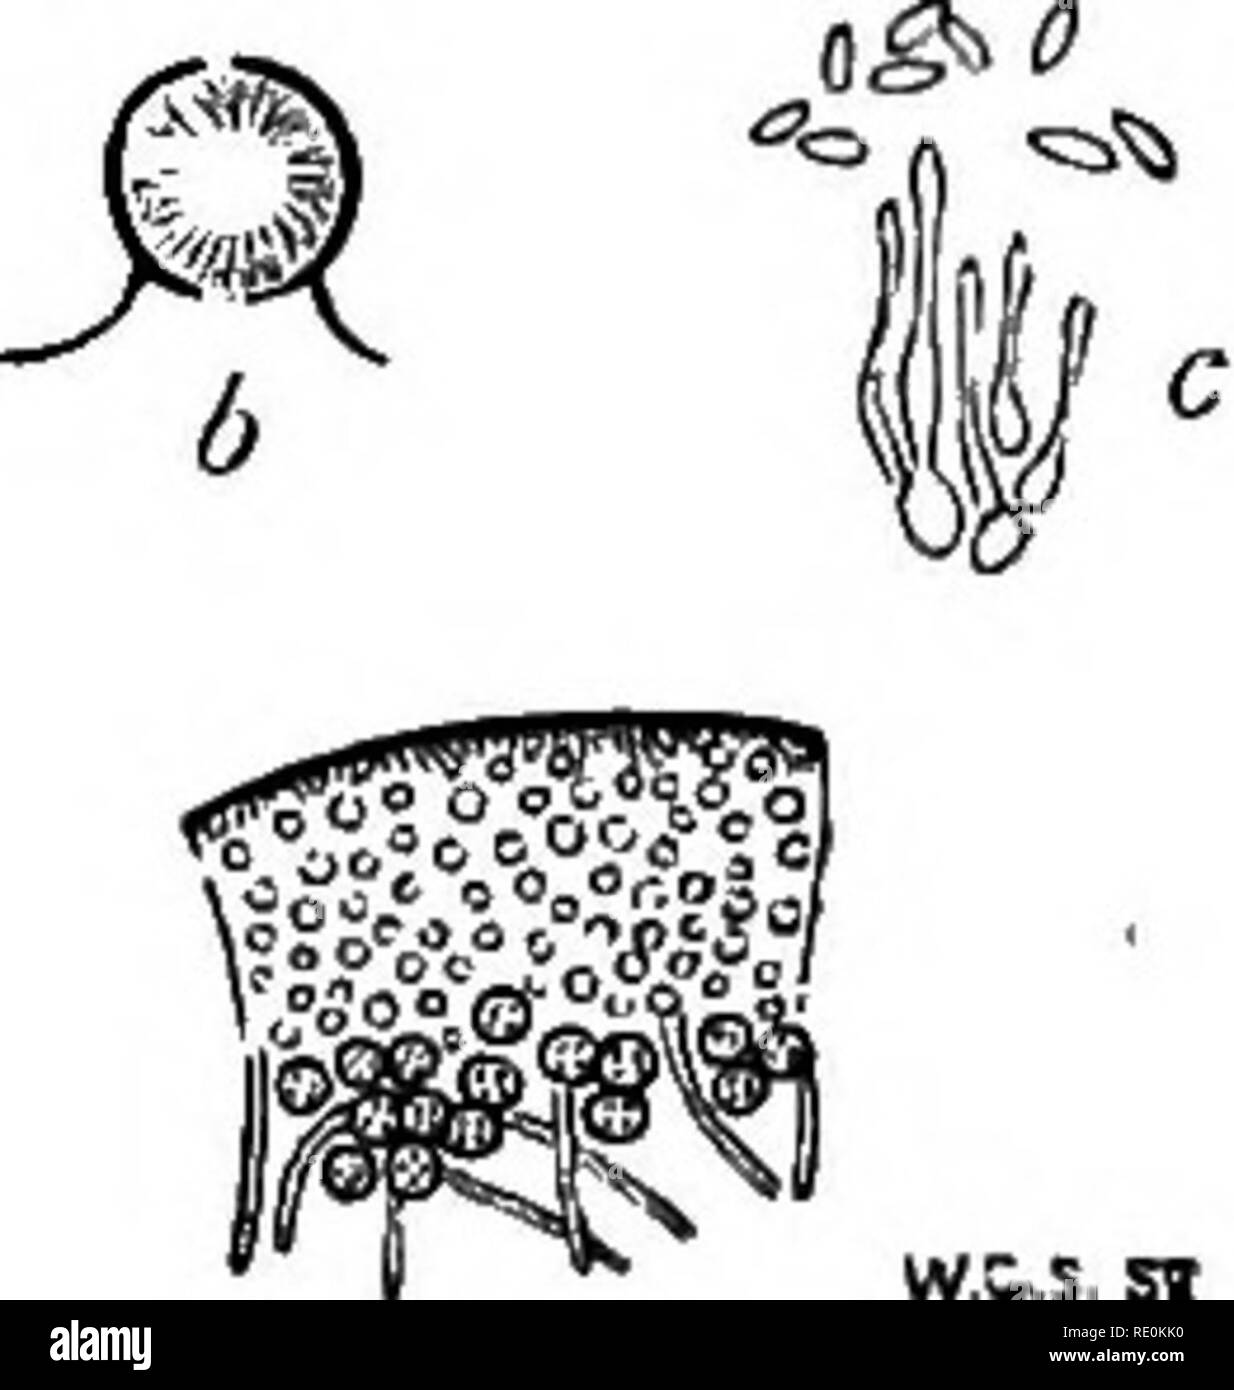 . Una monografia di licheni trovato in Gran Bretagna; essendo un catalogo descrittivo della specie nell'erbario del British Museum. I licheni. CEXEABIA.] CETRAKIW. 219 formano 2. acanthella Nyl. Mem. Soc. Cherb. v. (1857) p. 100.- tallo come nel tipo, ma molto mucb. spinuloso-denticulate tbrough- out. Apothecia pochi.-Cromb. Journ. Bot. 1870, p. 96; Leight. Lich. Fl. p. 98, ed. 3, p. 93.-Cornicvlaria spadieea y. acanthella Ach. Lich. Univ. (1810) p. 612. Coralloides frutieuli specie fuscum, spinosum aneto. Muse. 112, t. 17. f. 31 b. Si distingue per l'interamente hispido-spinulose o impostare^perdere tallo. Ho Foto Stock